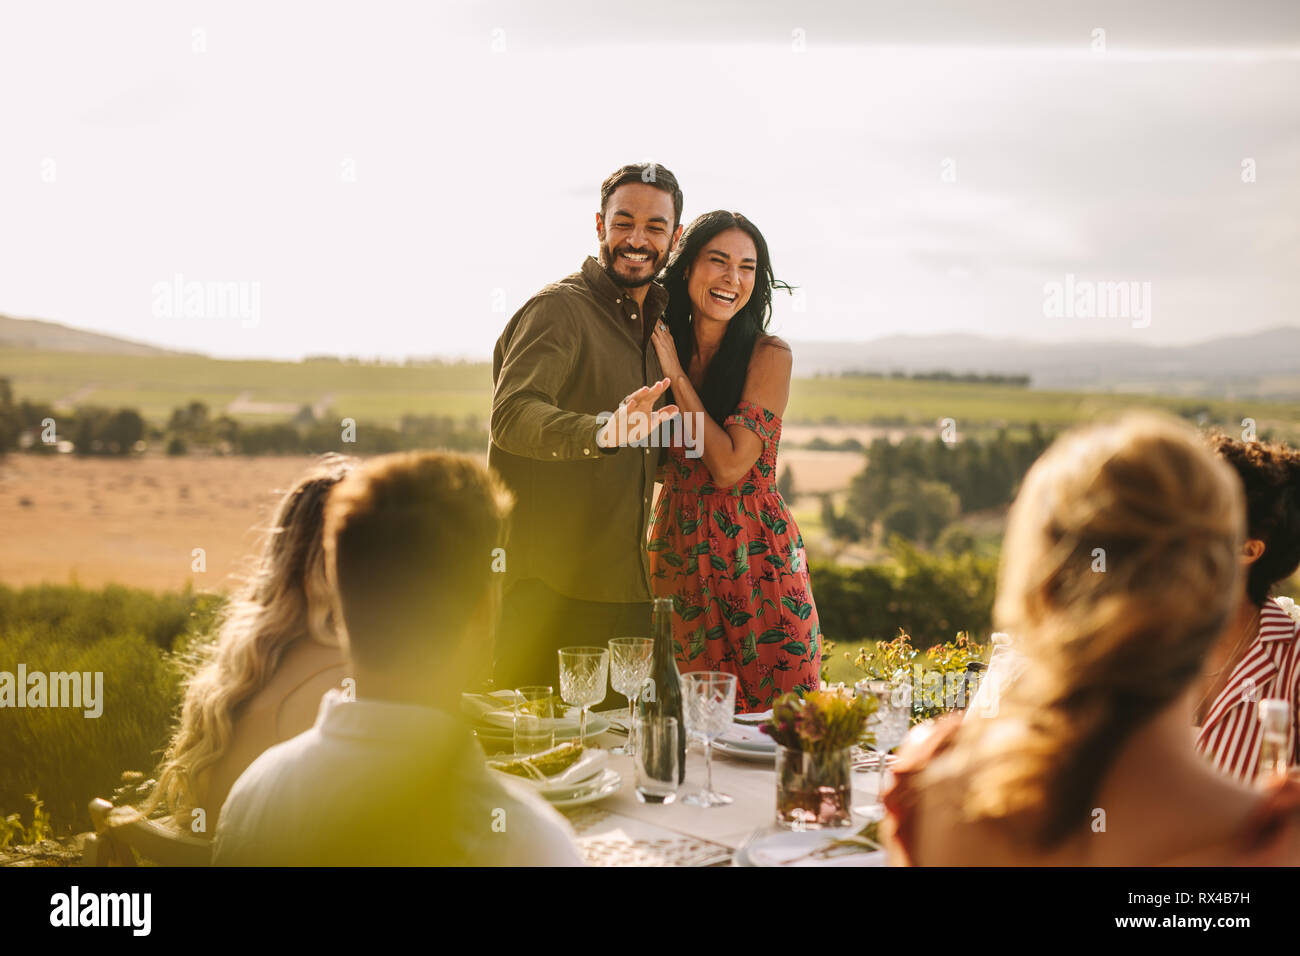 Pareja amorosa en una fiesta anunciando su matrimonio con sus amigos. Hombre y mujer sonriente haciendo un anuncio durante una cena al aire libre. Foto de stock